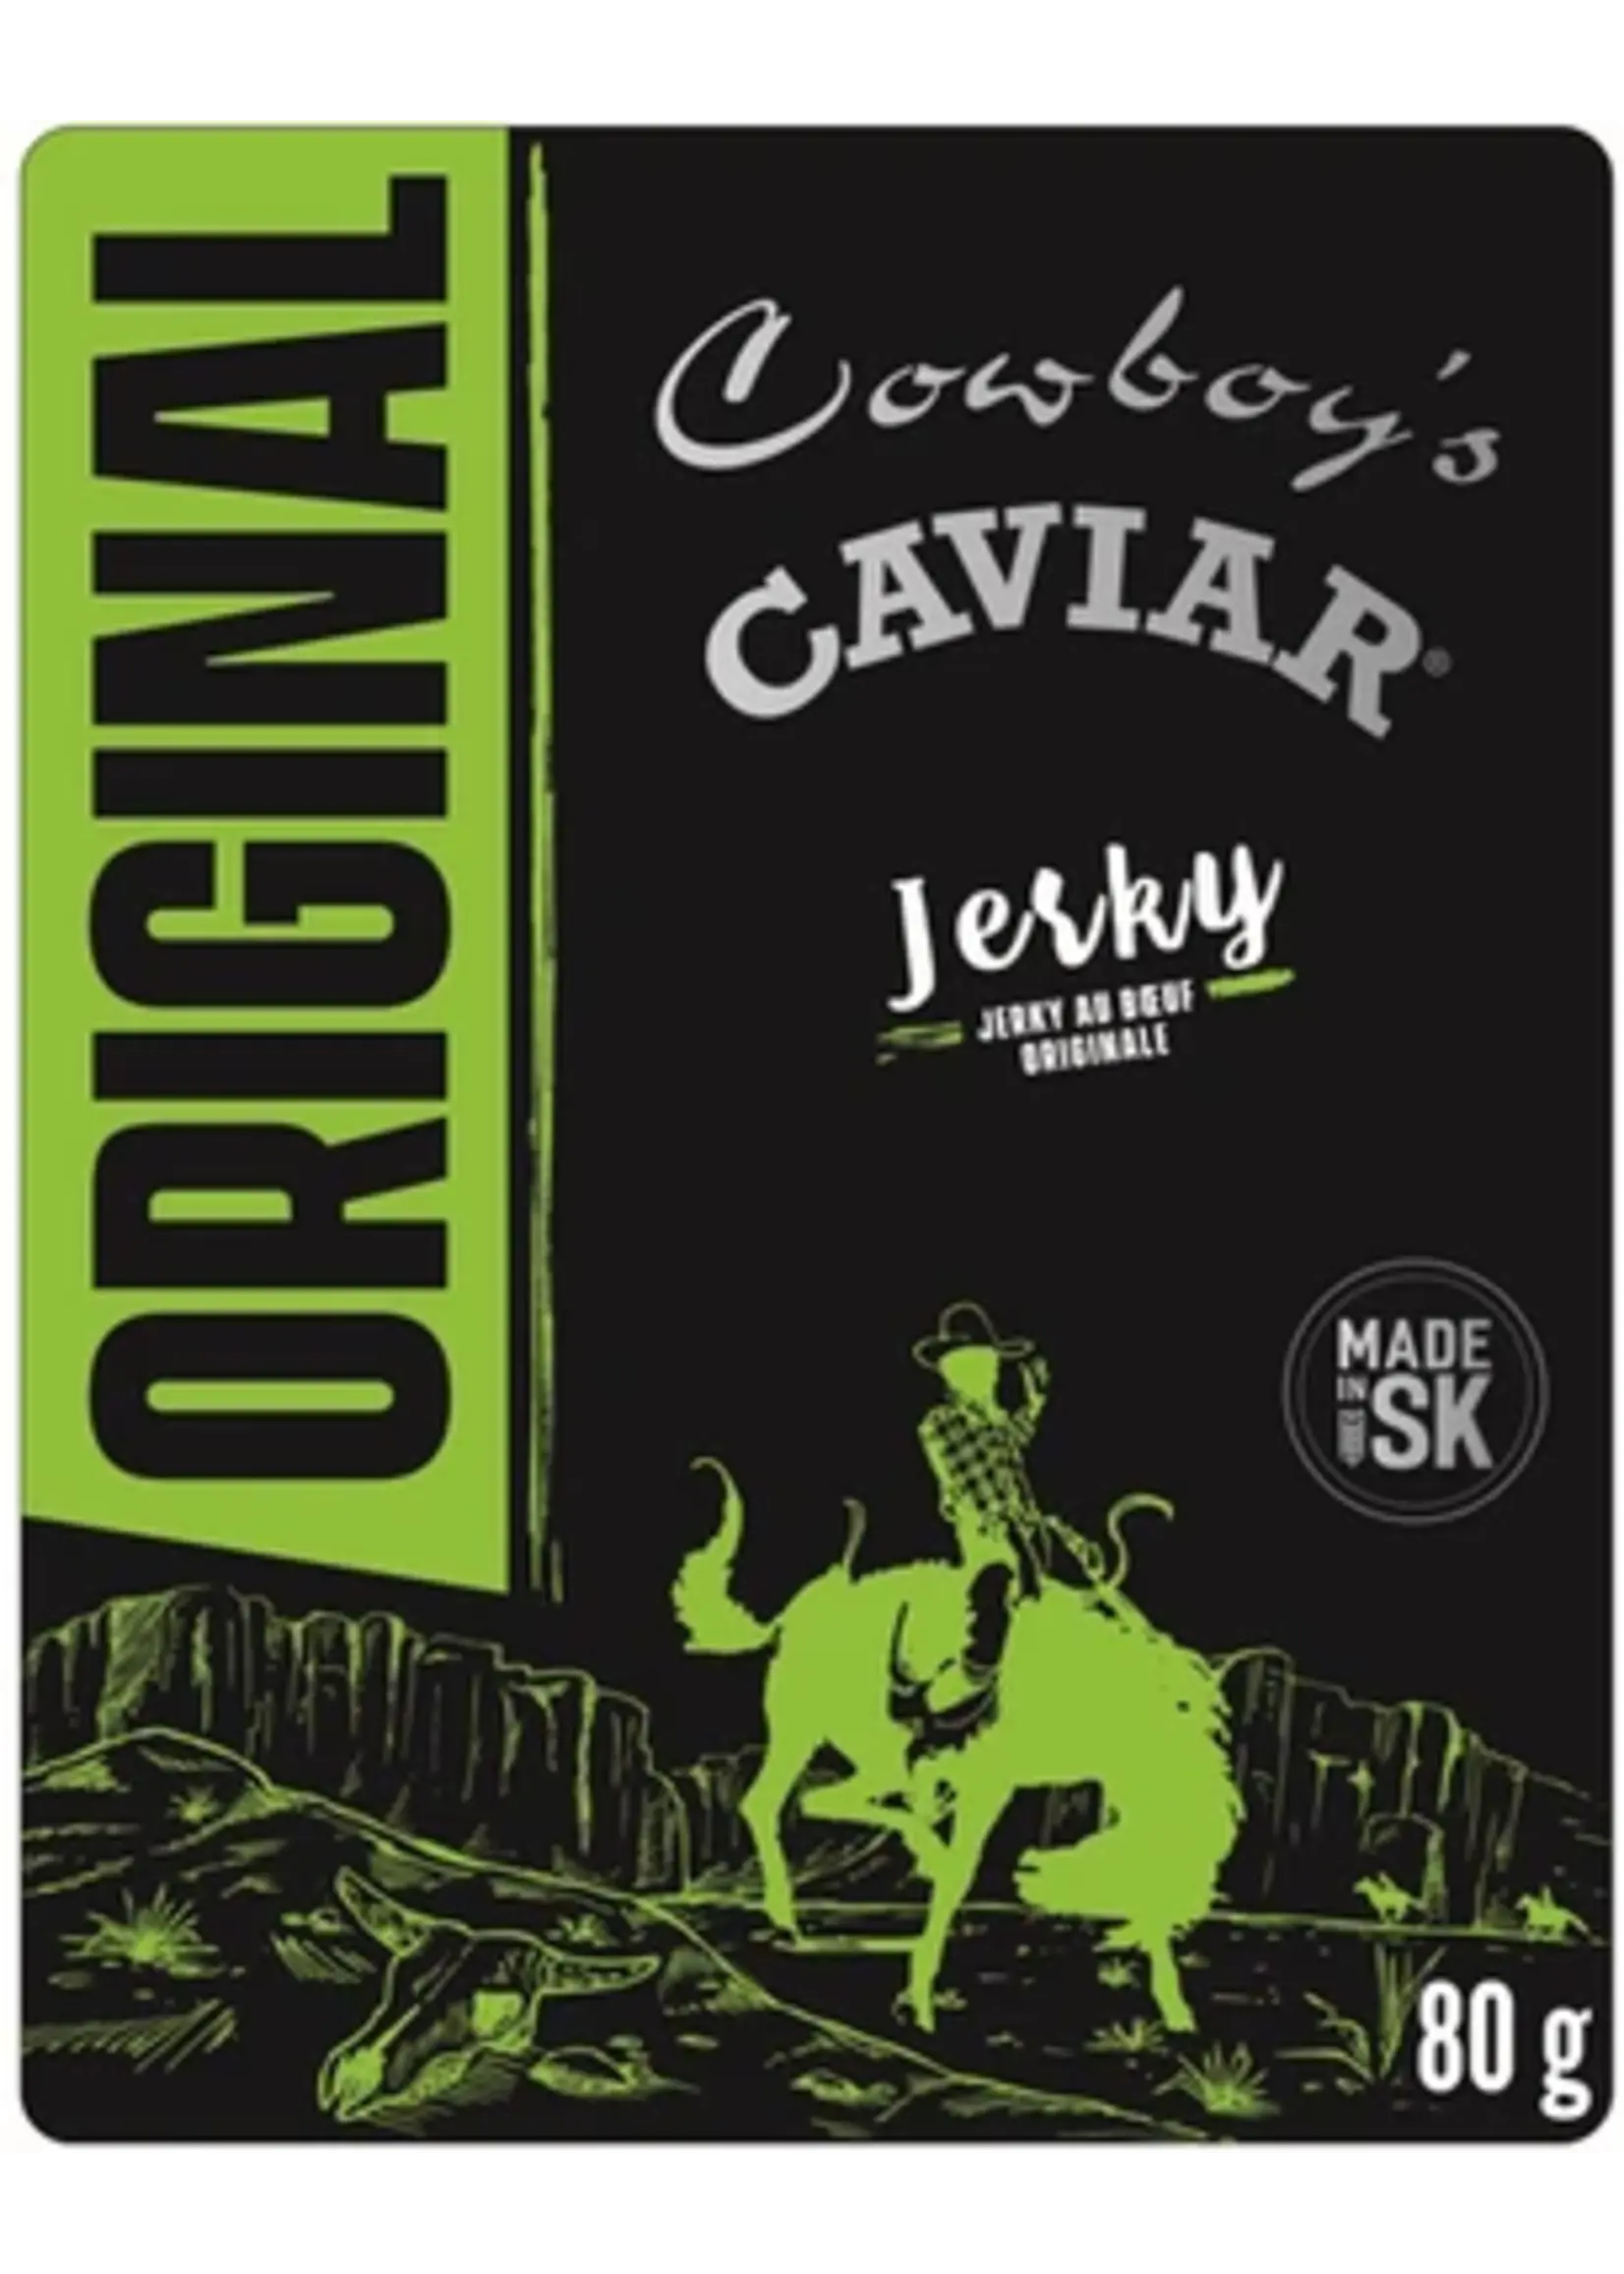 Cowboy's Caviar Cowboy Caviar Jerky - Original -